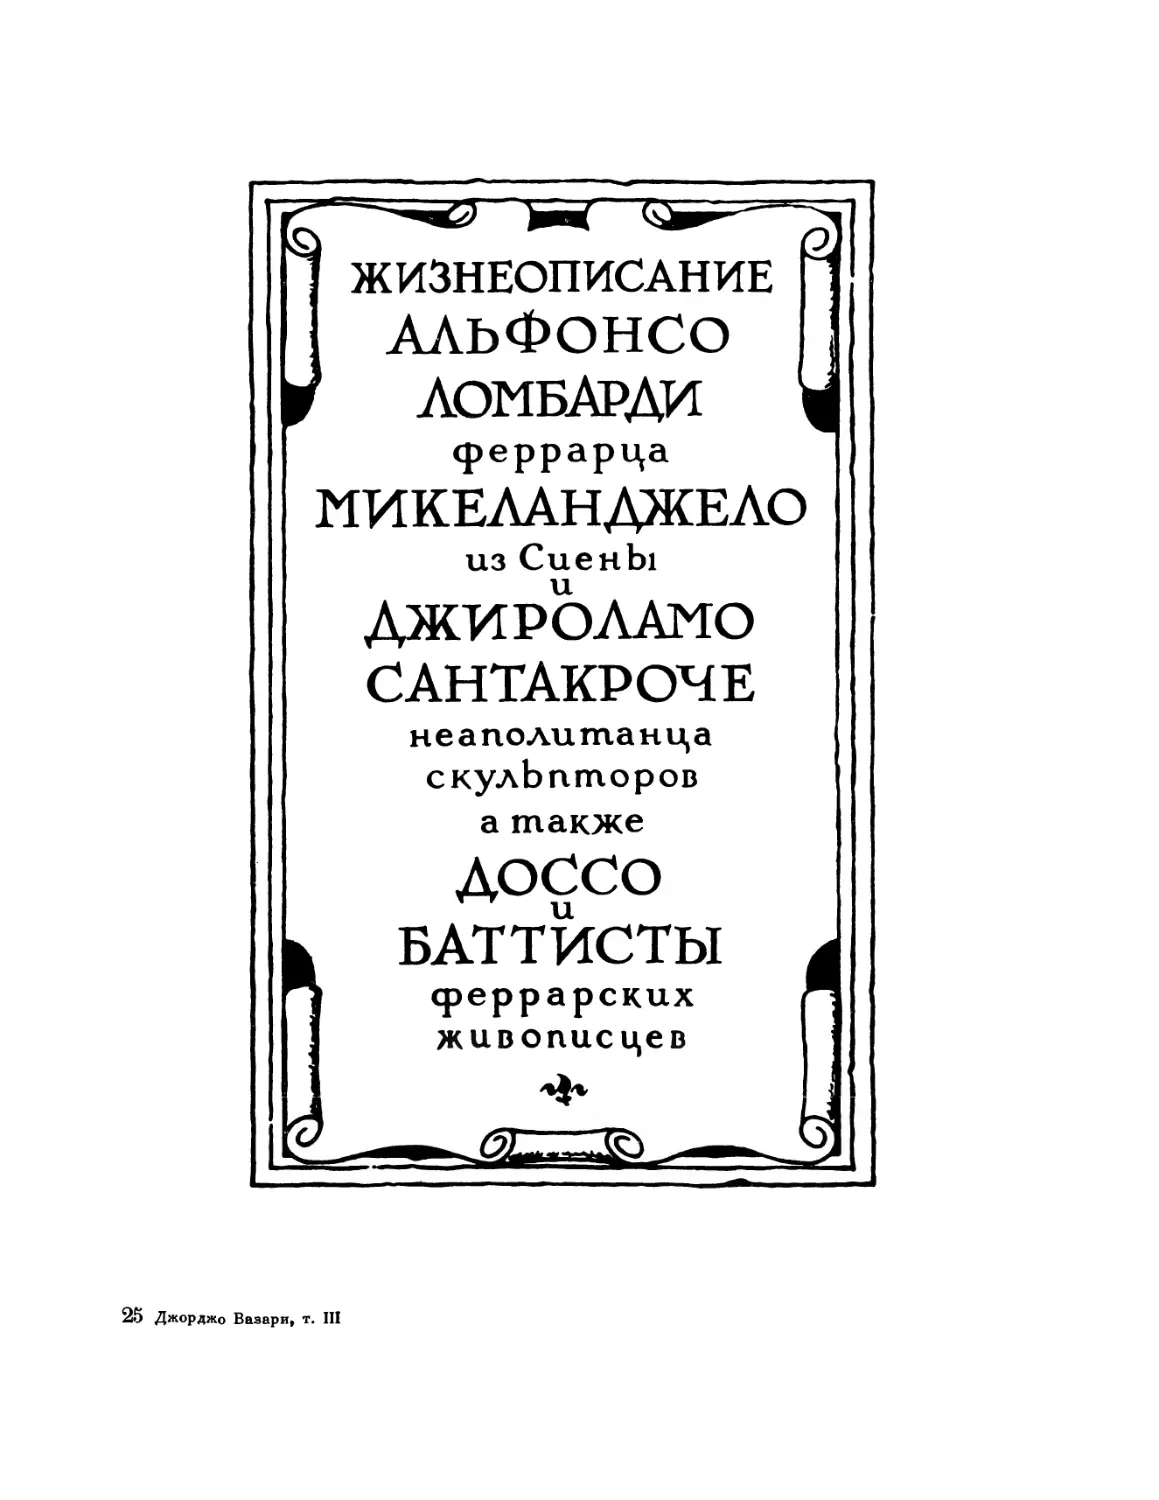 Жизнеописание Альфонсо Ломбарди, феррарца, Микеланджело из Сиены и Джироламо Сантакроче, неаполитанца, скульпторов, а также Доссо и Баттисты, феррарских живописцев